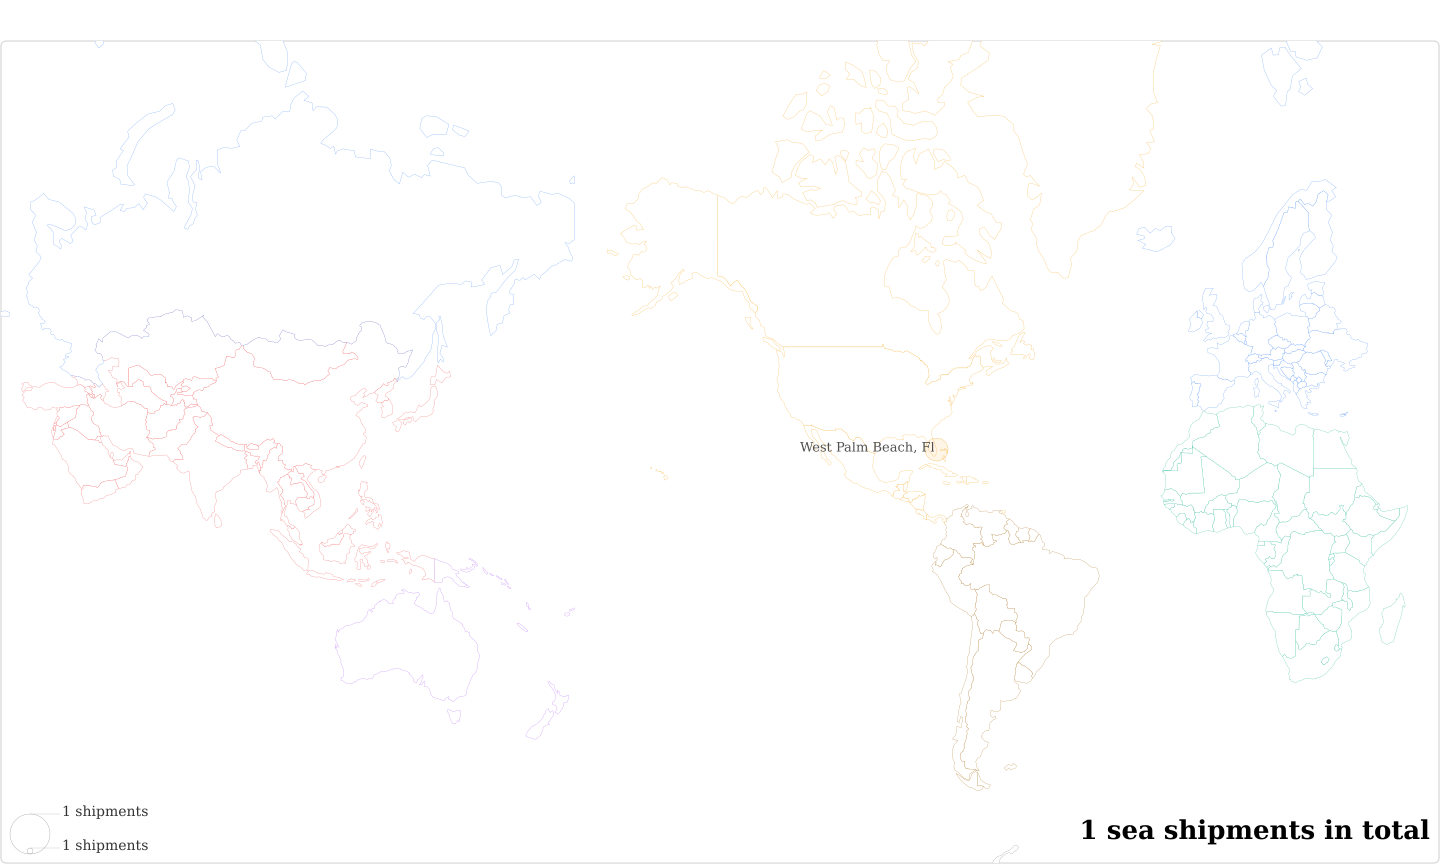 Bert Erens's Imports Per Country Map